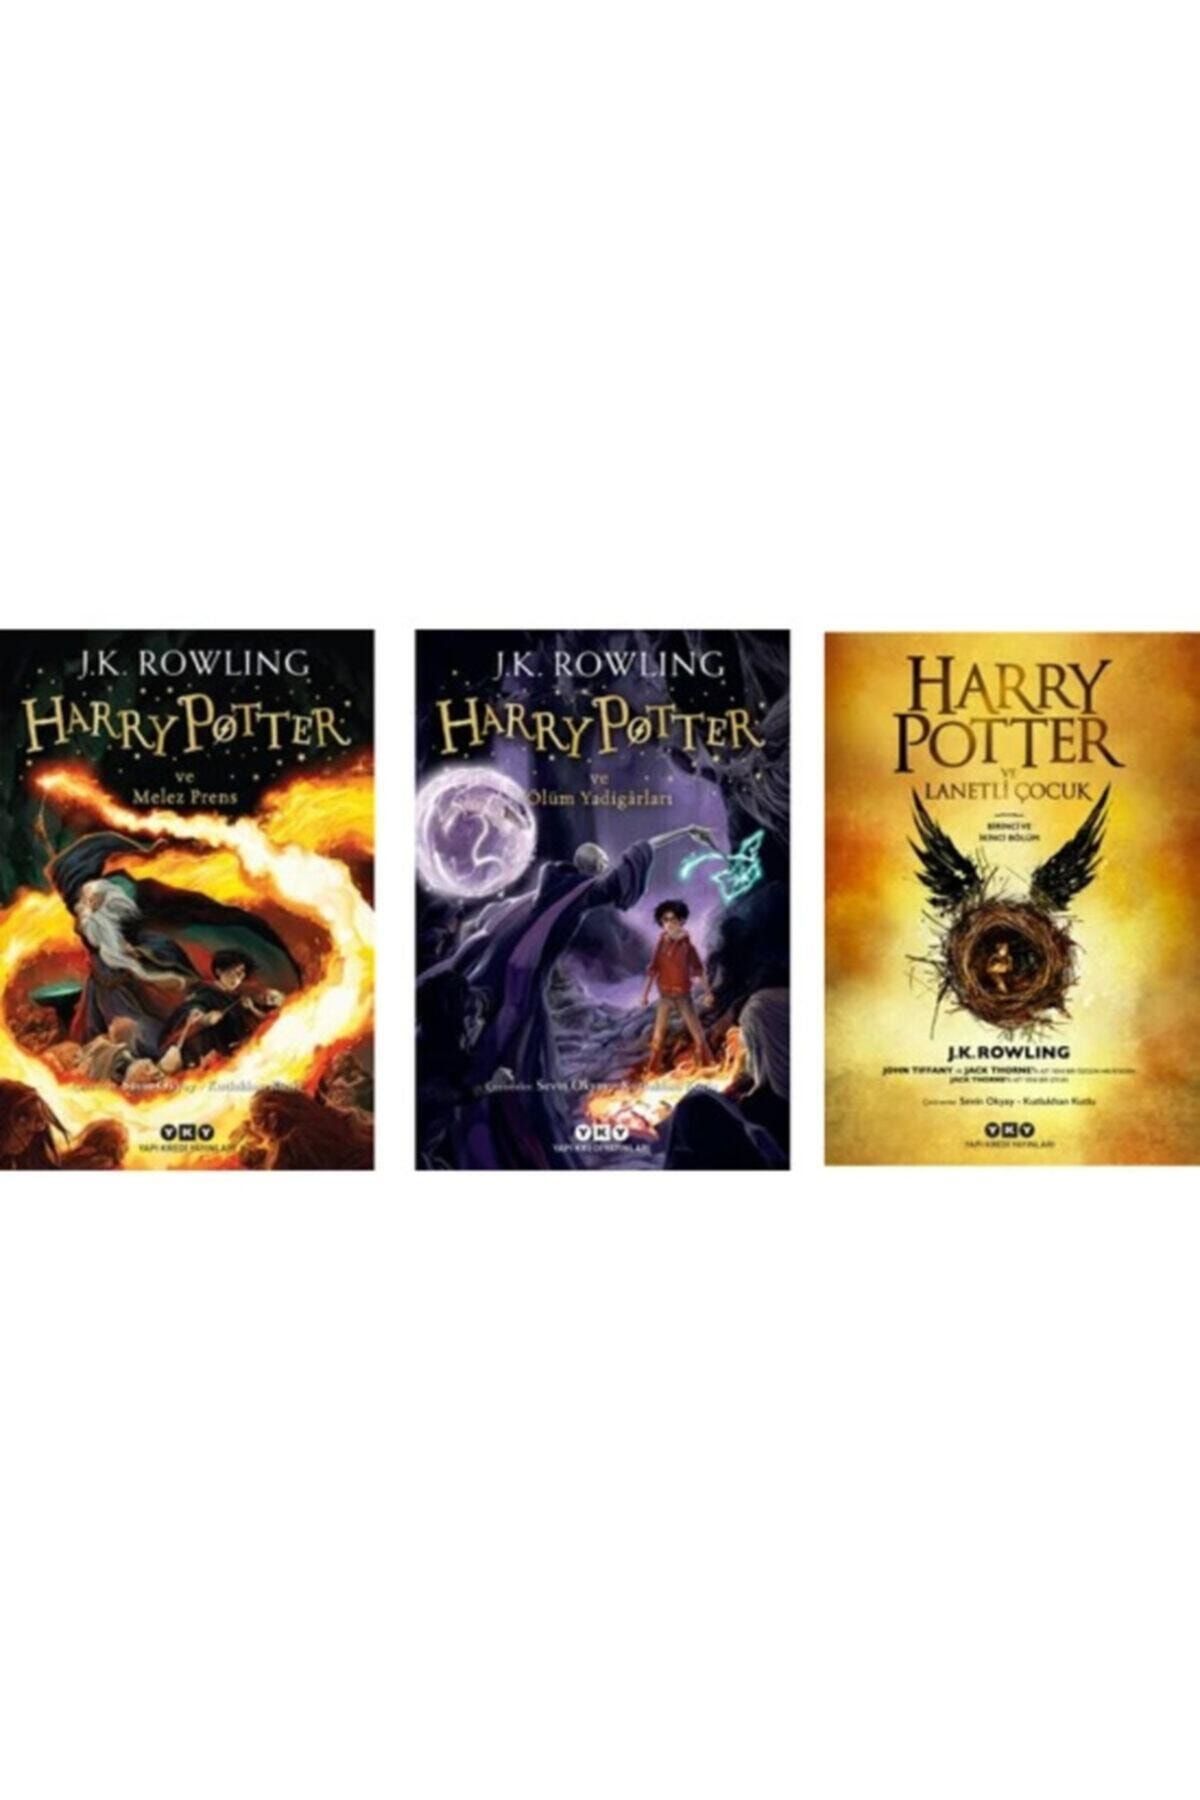 Yapı Kredi Yayınları Harry Potter Serisi 3 Kitap 6. 7. 8. Kitaplar - Melez Prens - Ölüm Yadigarları - Lanetli Çocuk